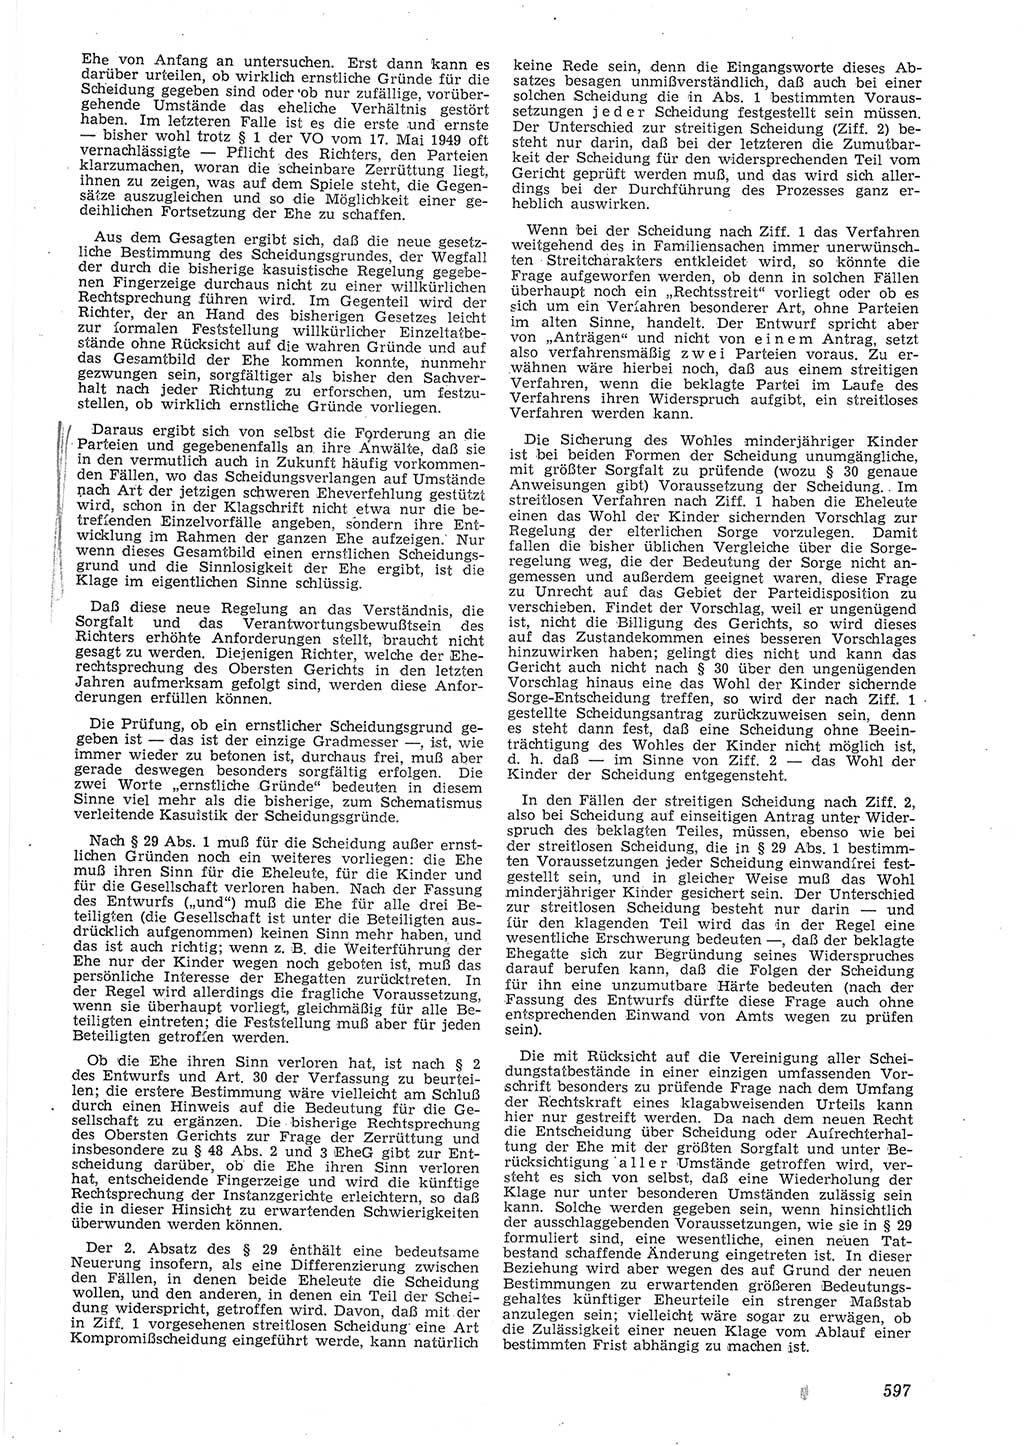 Neue Justiz (NJ), Zeitschrift für Recht und Rechtswissenschaft [Deutsche Demokratische Republik (DDR)], 8. Jahrgang 1954, Seite 597 (NJ DDR 1954, S. 597)